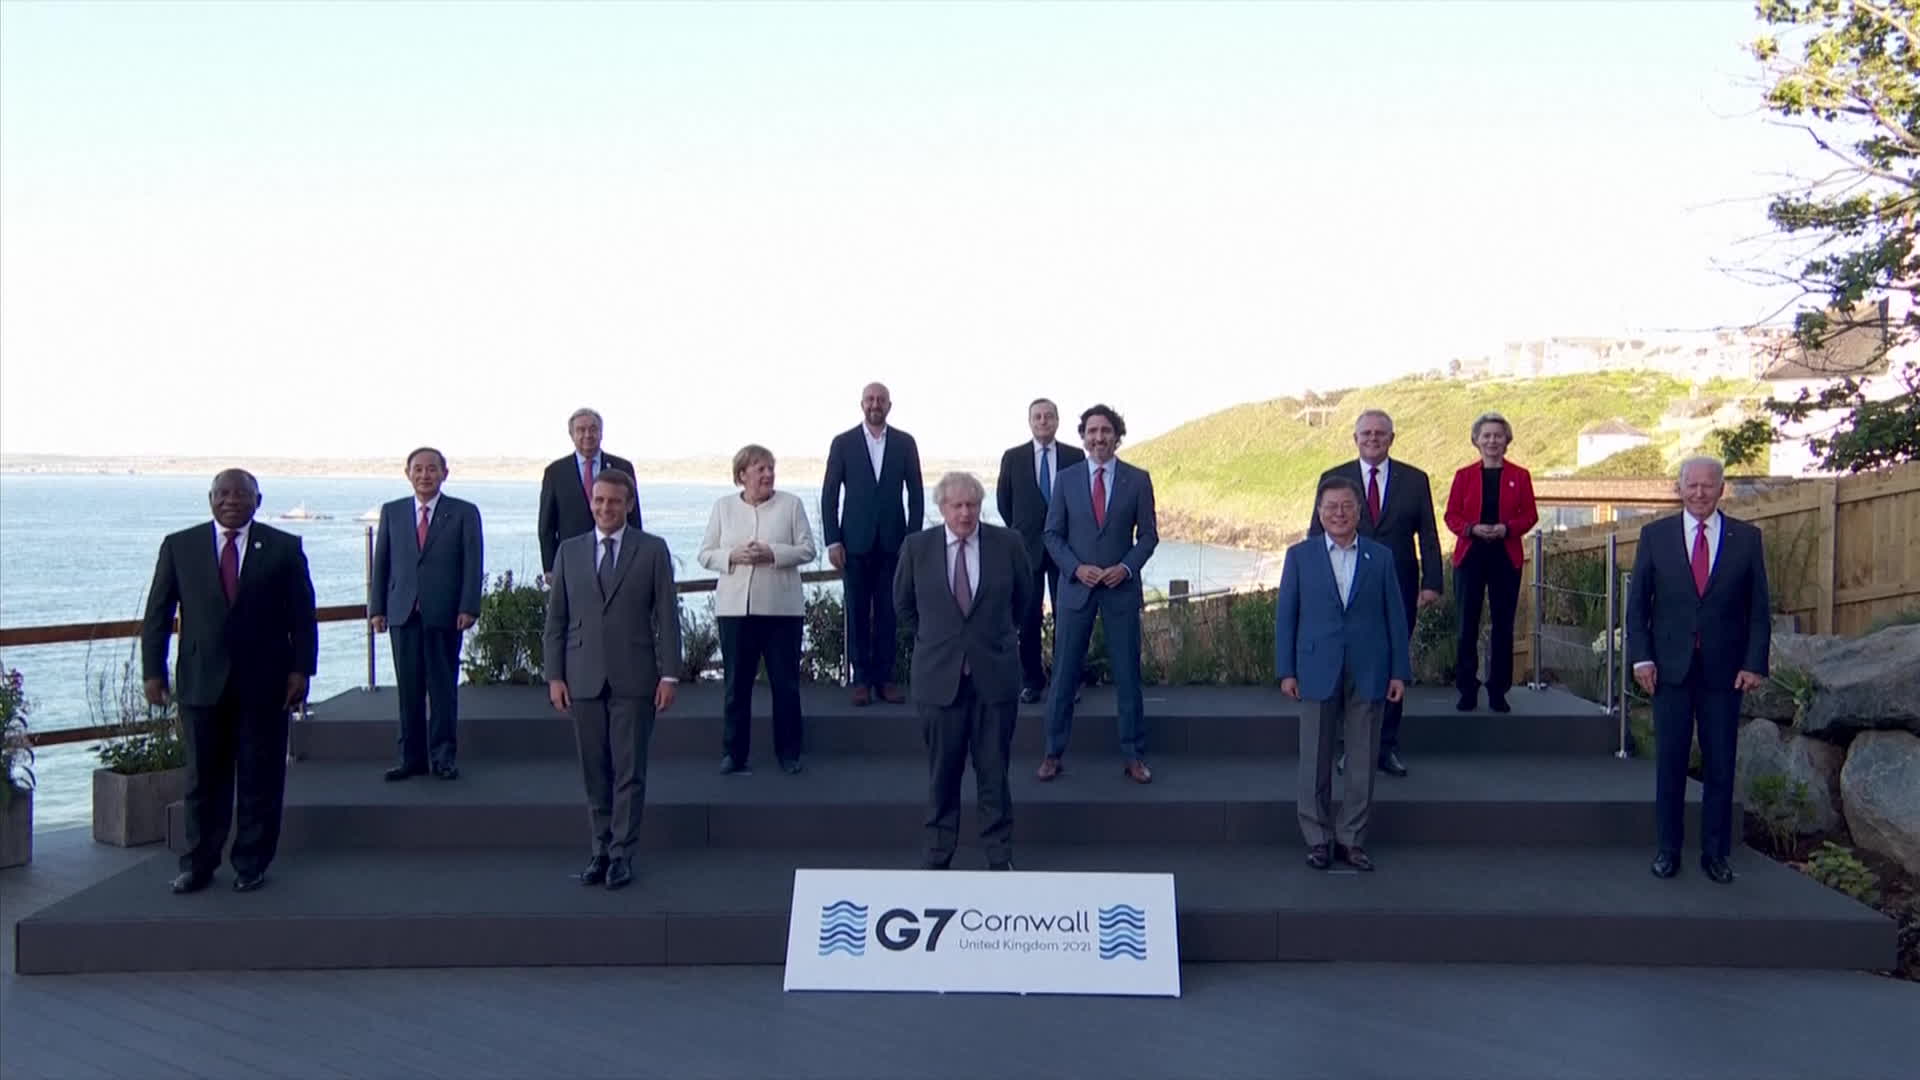 영국 콘월에서 G7 정상회의 기념촬영. 왼쪽에서 두번째에 스가 요시히데 일본 총리가, 오른쪽에서 4번째에 문재인 대통령